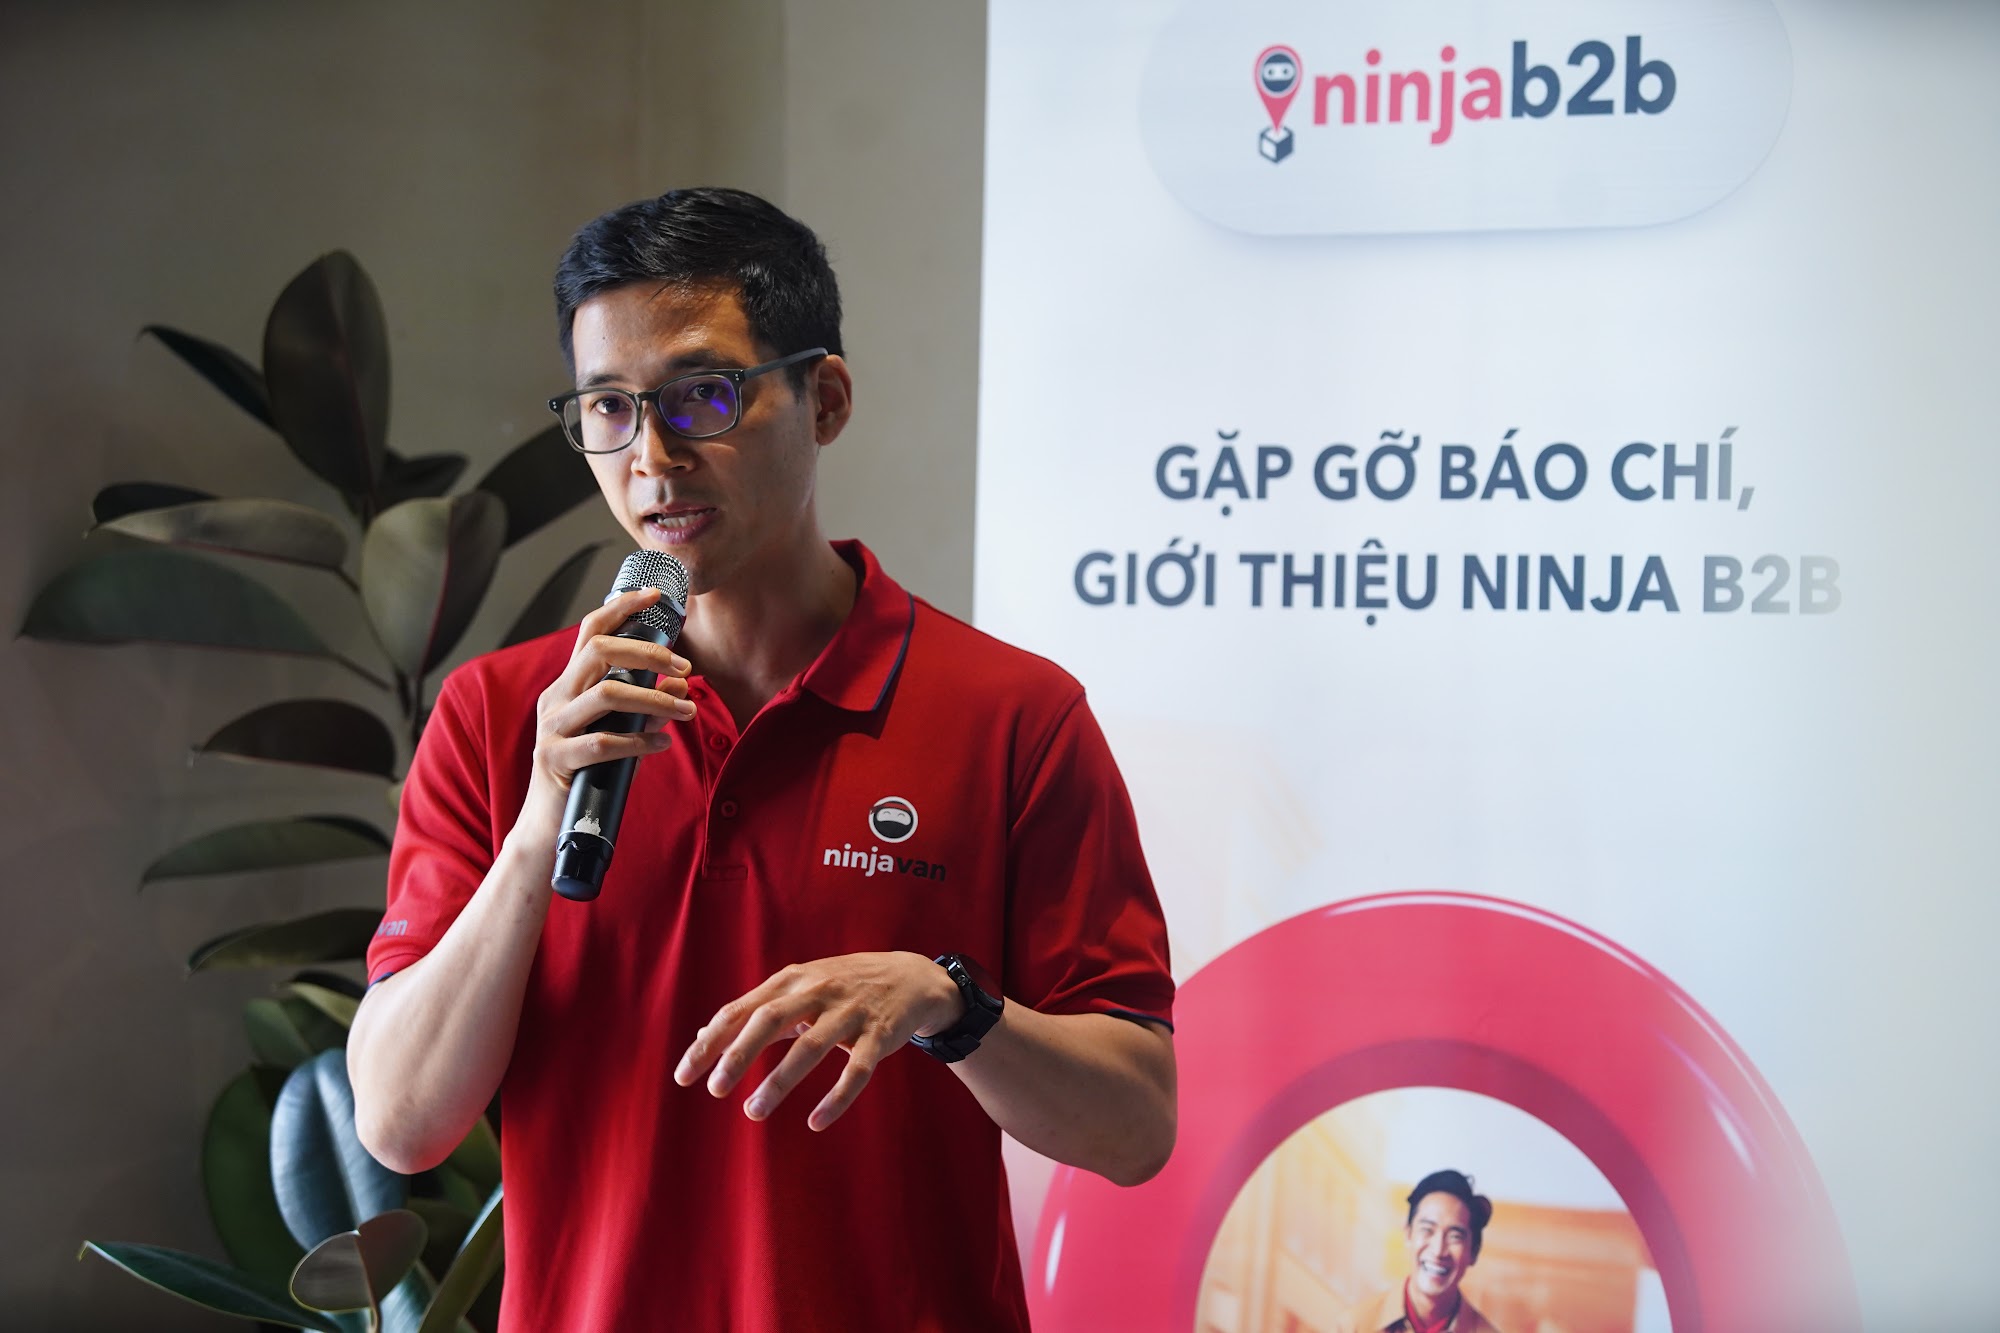 Chủ tịch Ninja Van Việt Nam: Chúng tôi đang vận chuyển hơn 2 triệu gói hàng/ngày khắp Đông Nam Á, có thể giao kiện hàng dưới 100kg với chi phí khoảng 100 nghìn đồng- Ảnh 1.